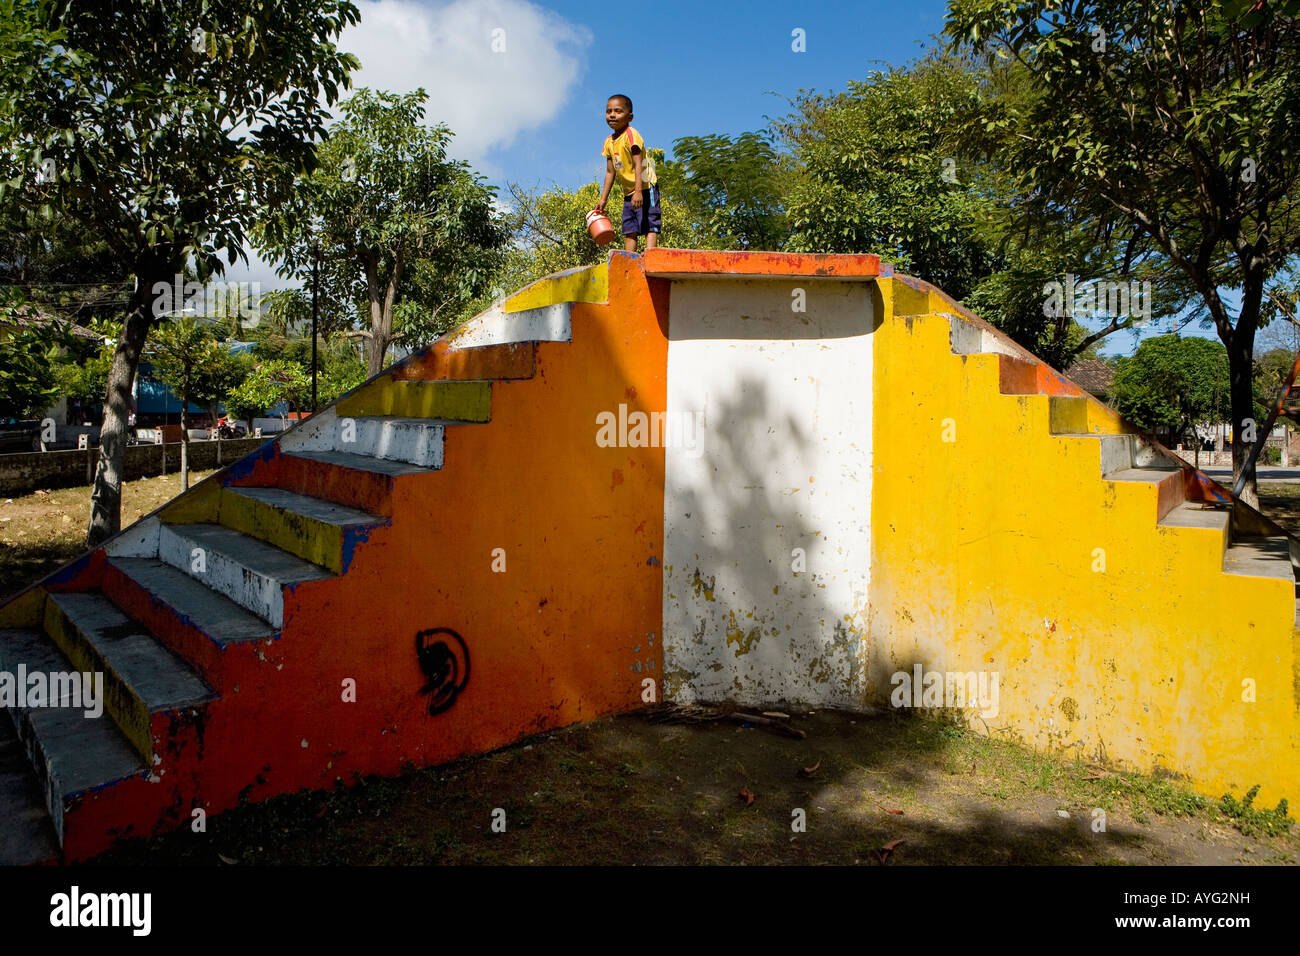 Garçon jouant sur l'île Ometepe Altagracia diapositive colorées au Nicaragua Banque D'Images